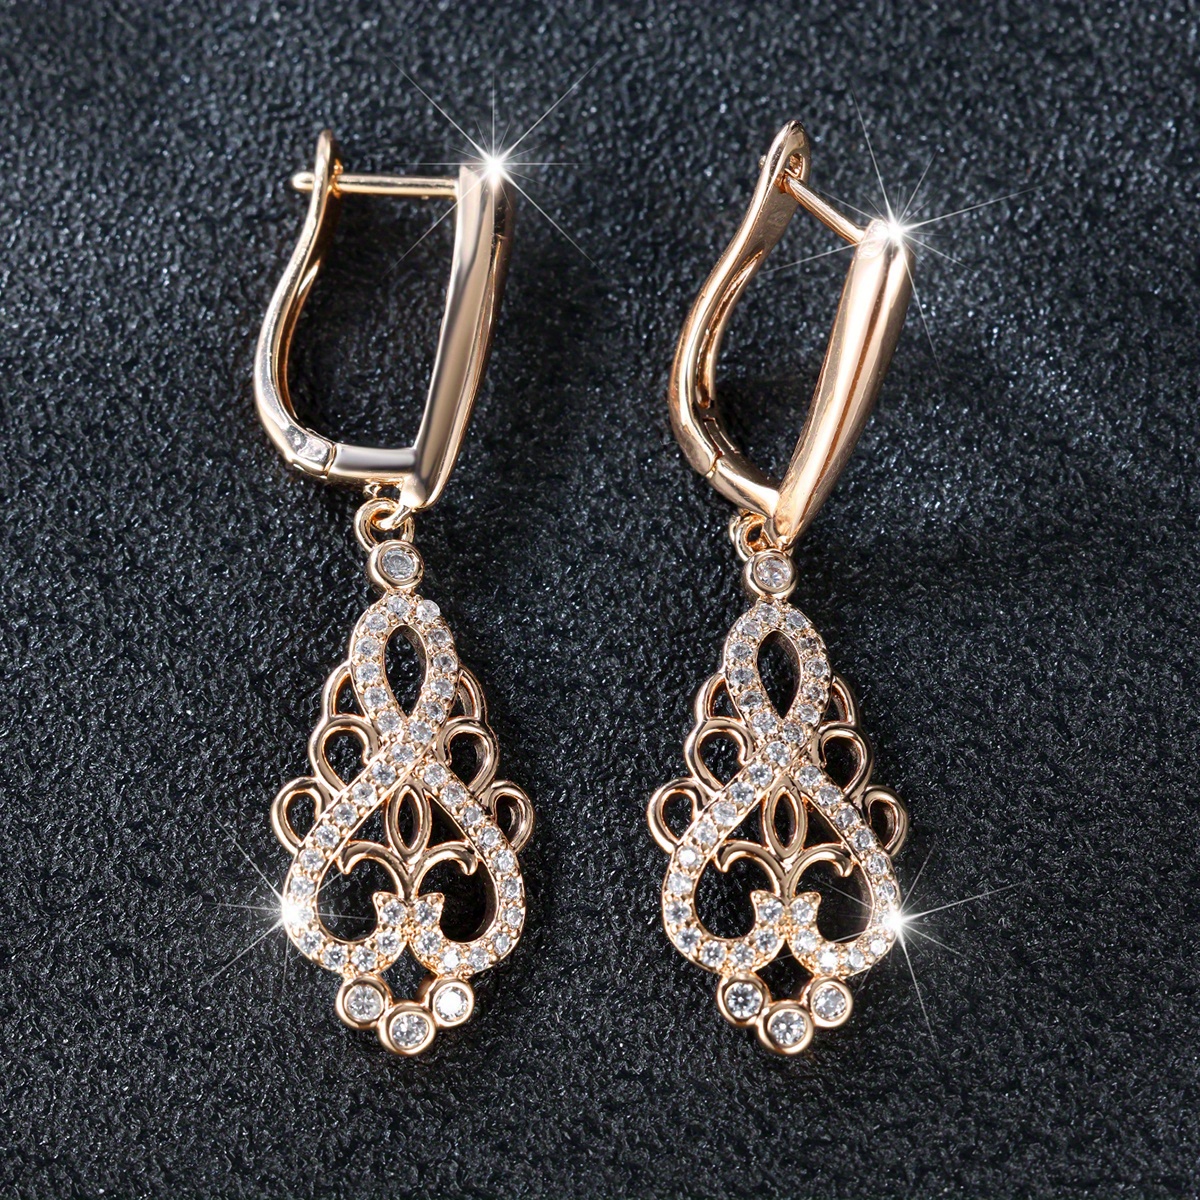 

1 Pair Vintage Palace Style Drop Earrings Elegant Zircon Inlaid Hoop Earrings Trendy Jewelry Accessories For Women Girls